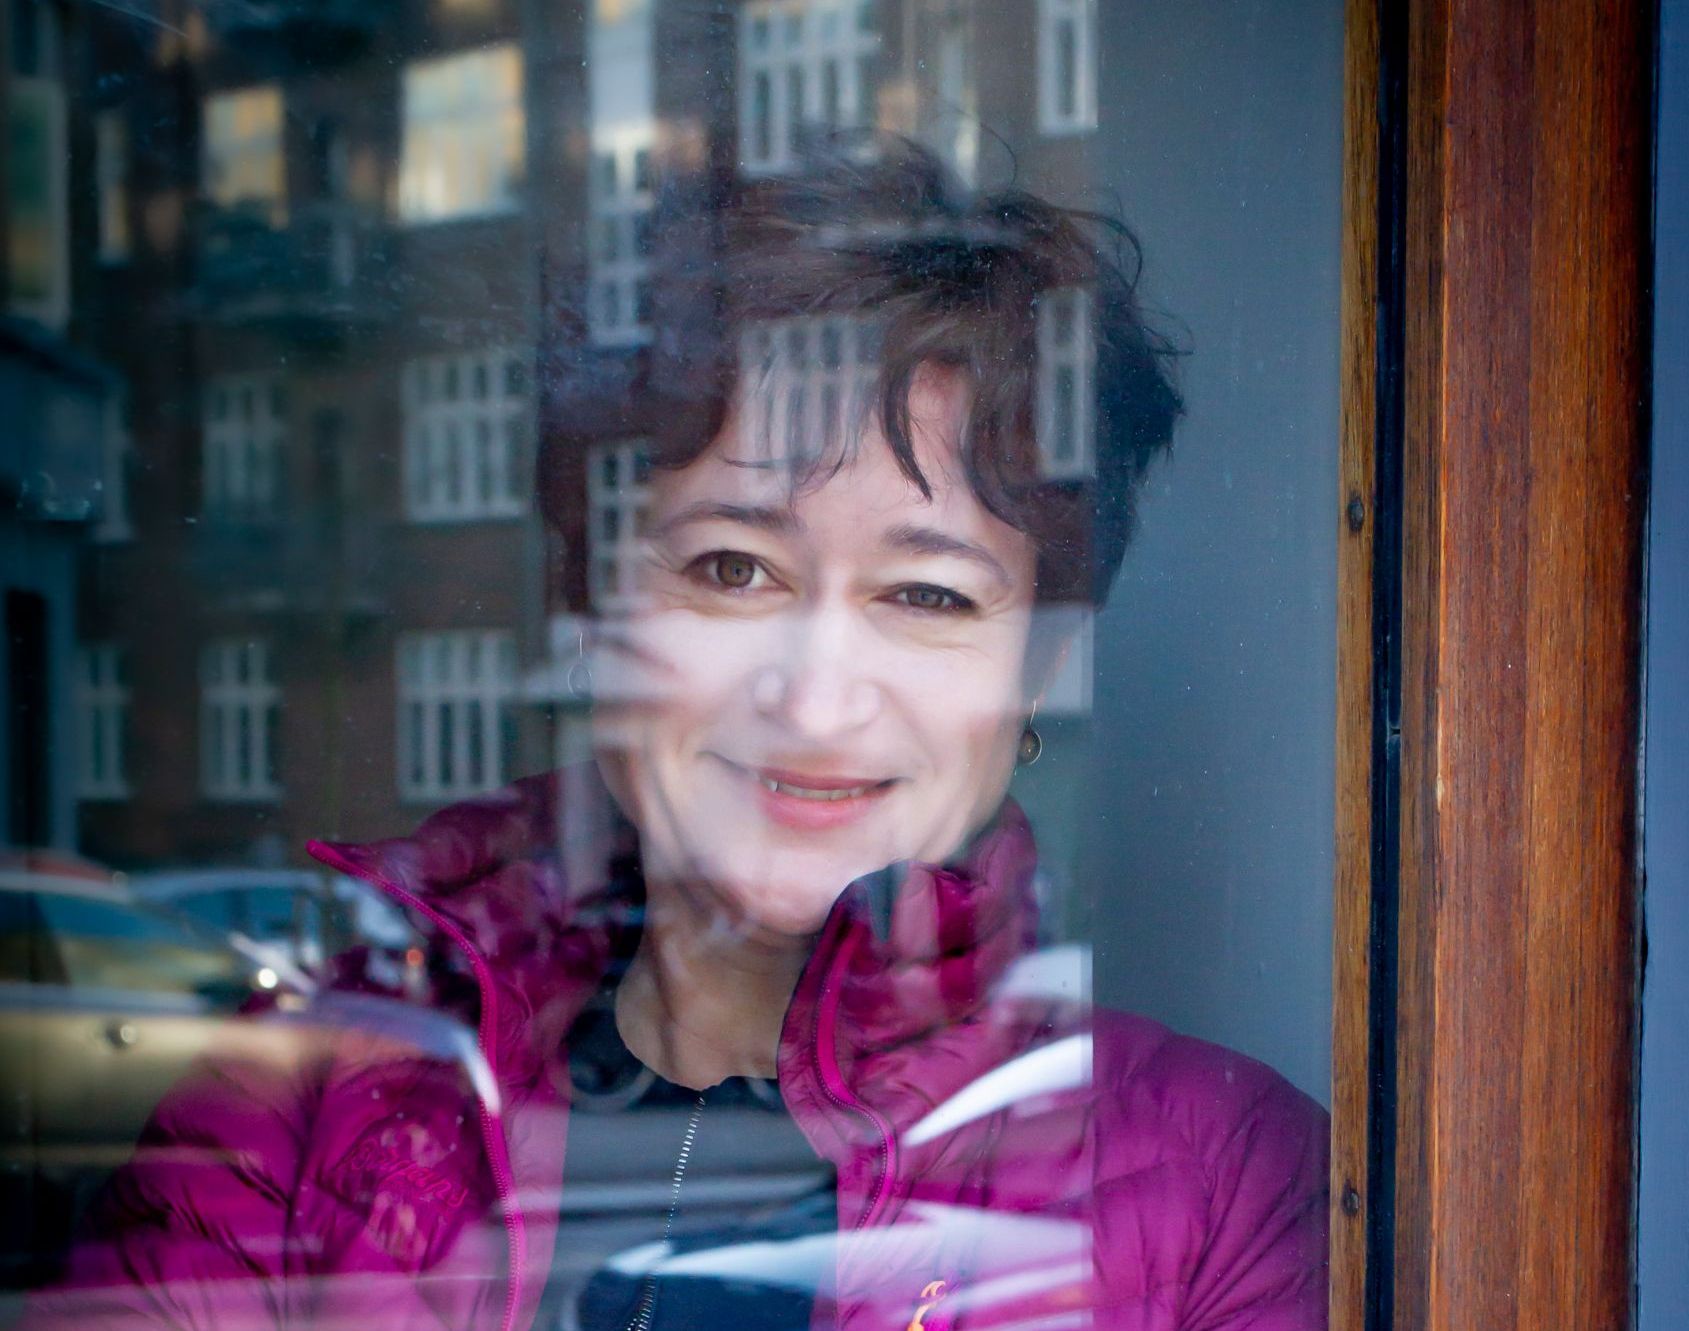 portrait of woman - reflection in window